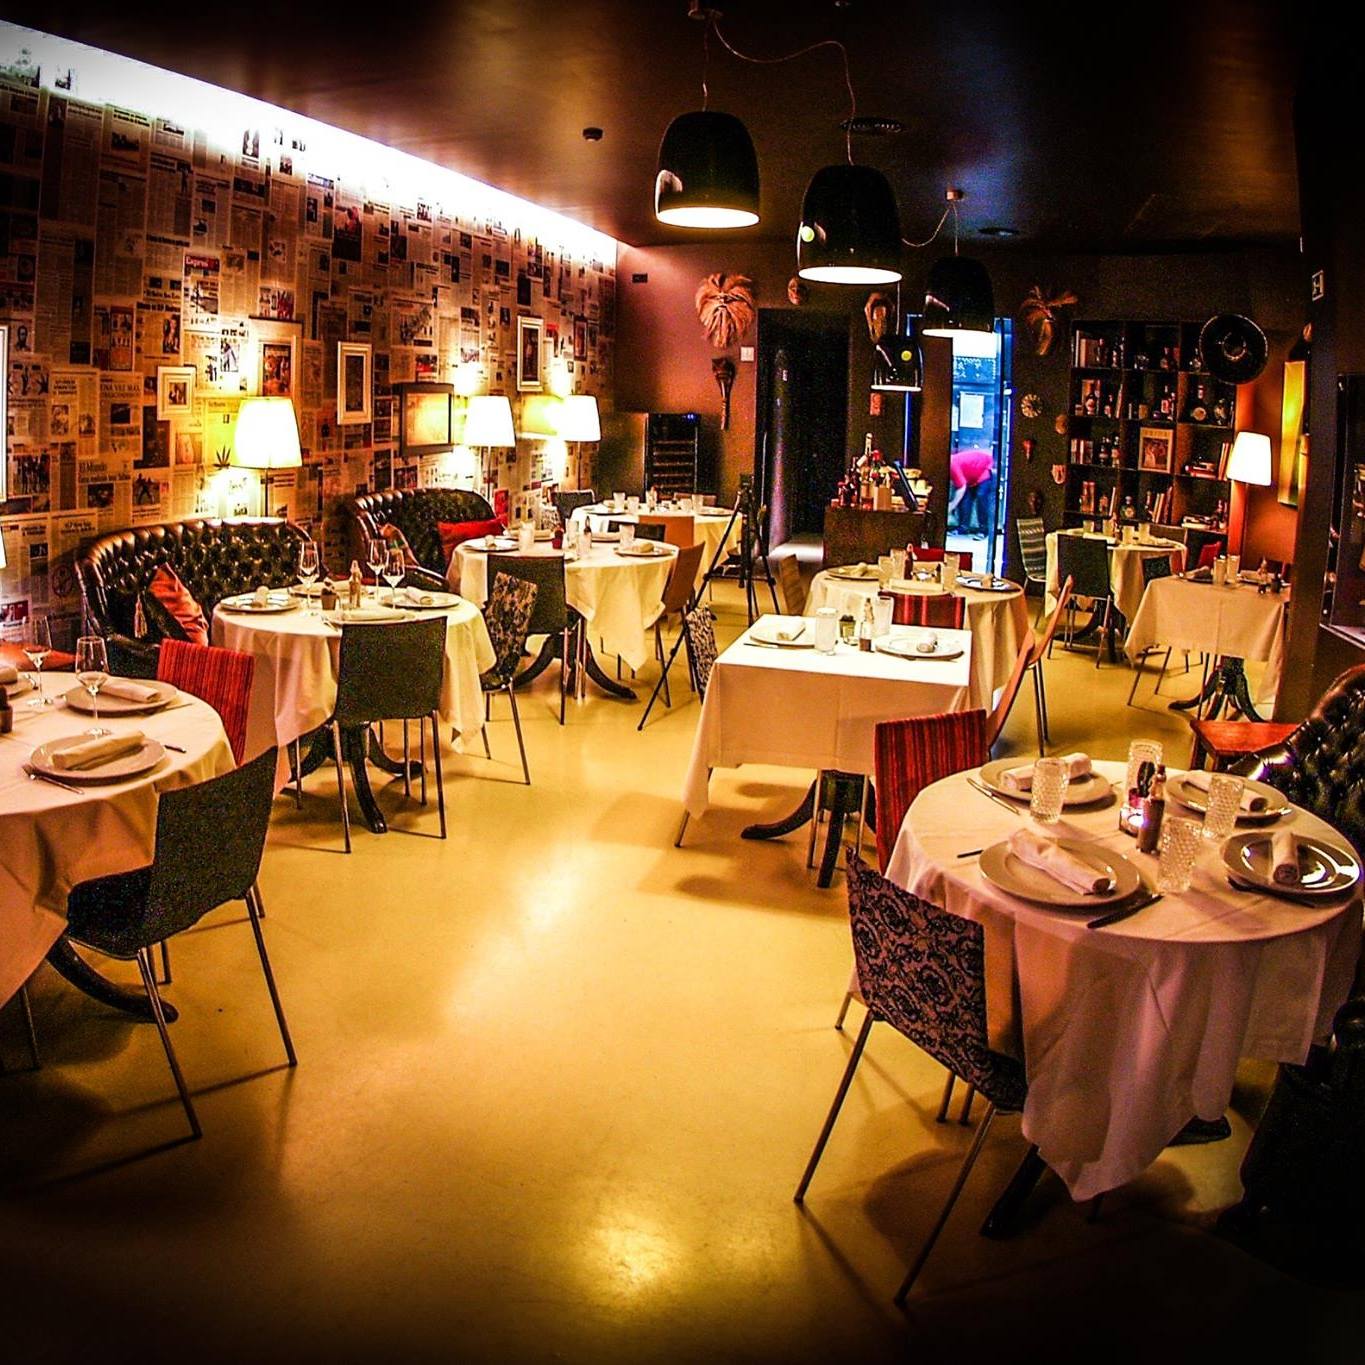 Top 5 Restaurants for Valentine’s Day in Porto